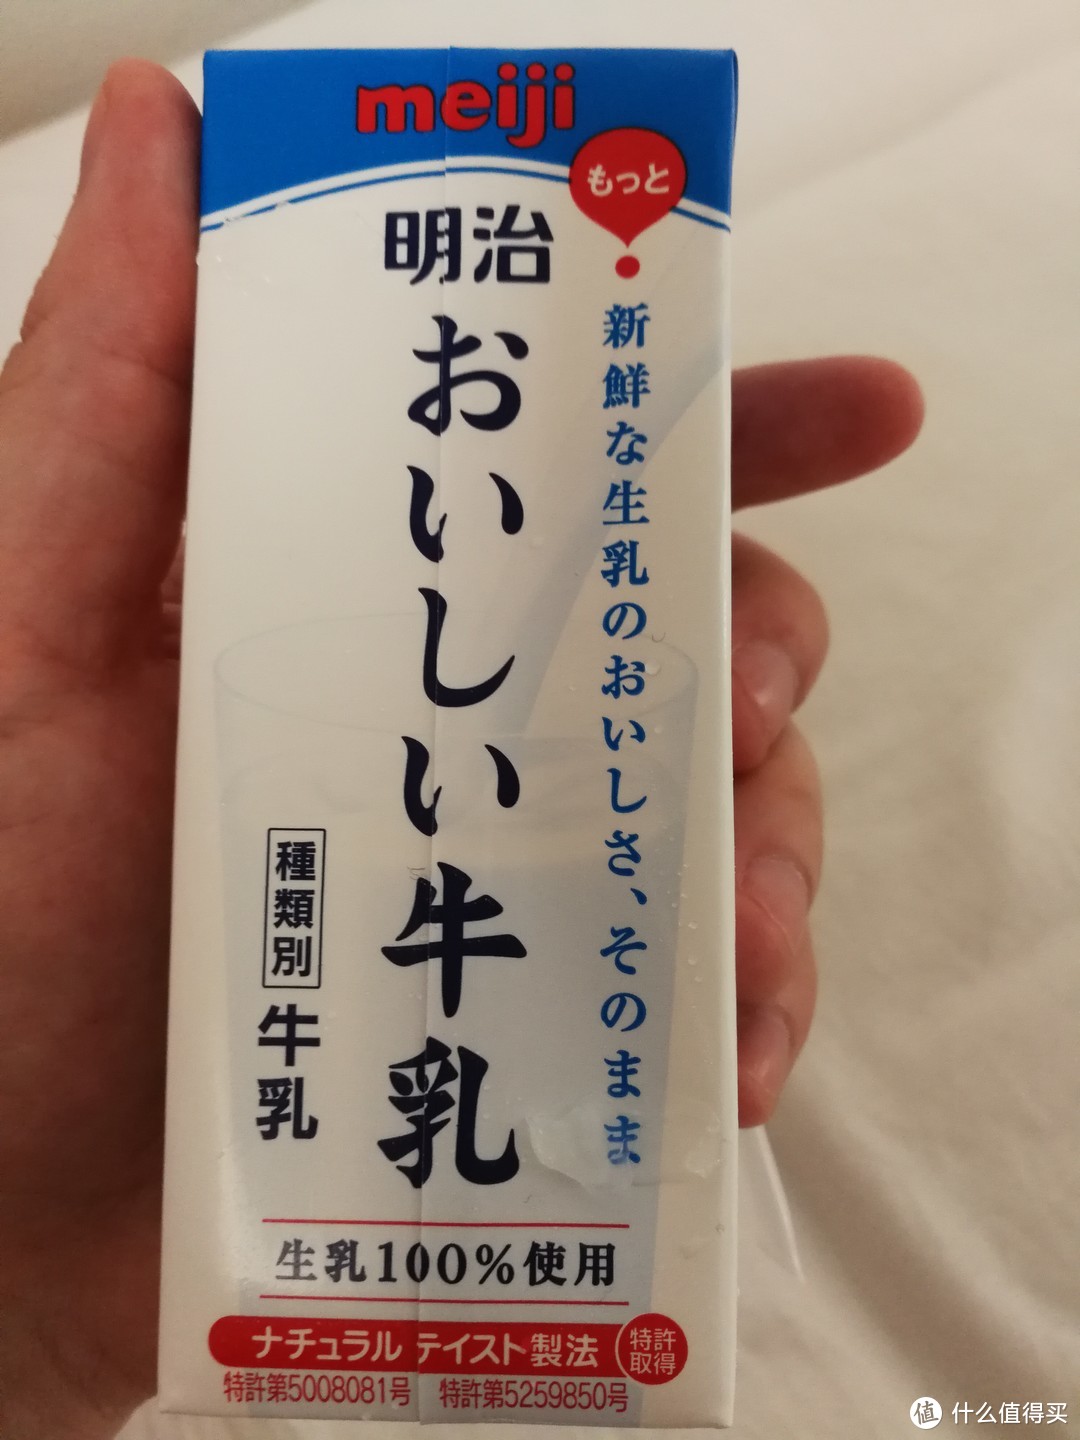 每次过来日本每天必须喝一瓶